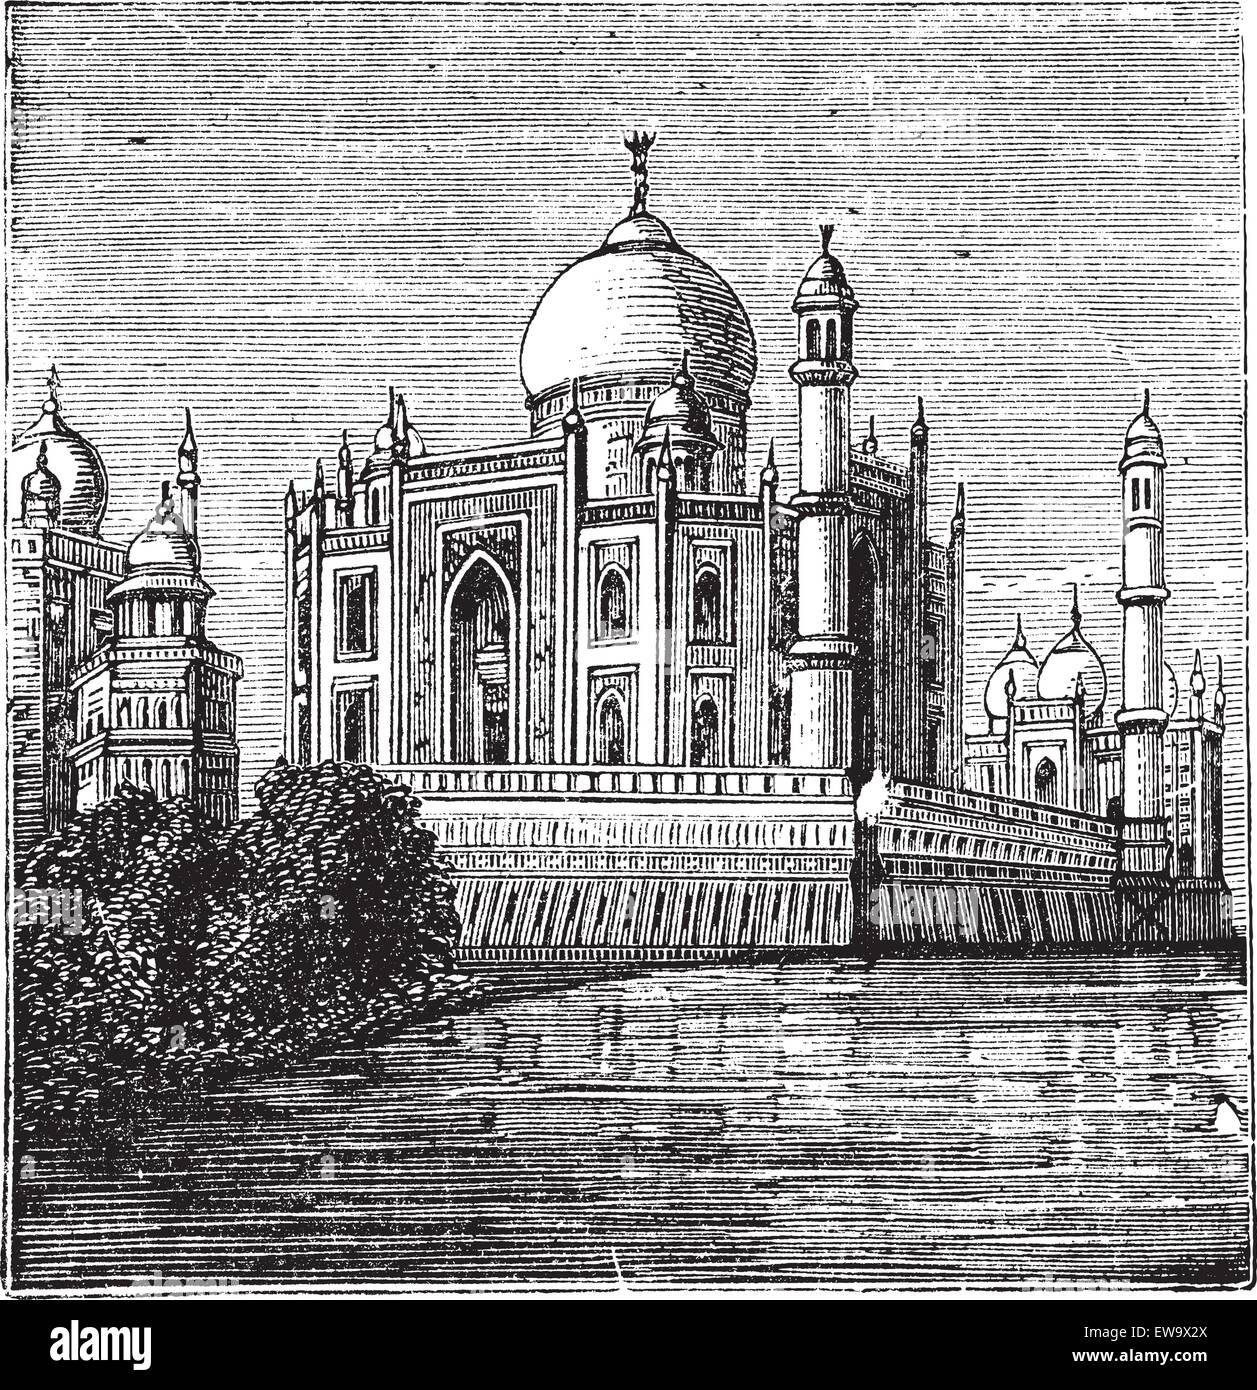 L'Inde, Taj-Mahal. Vieille illustration gravée du fameux Taj-Mahal. Gravure de la fin de 1800. Illustration de Vecteur